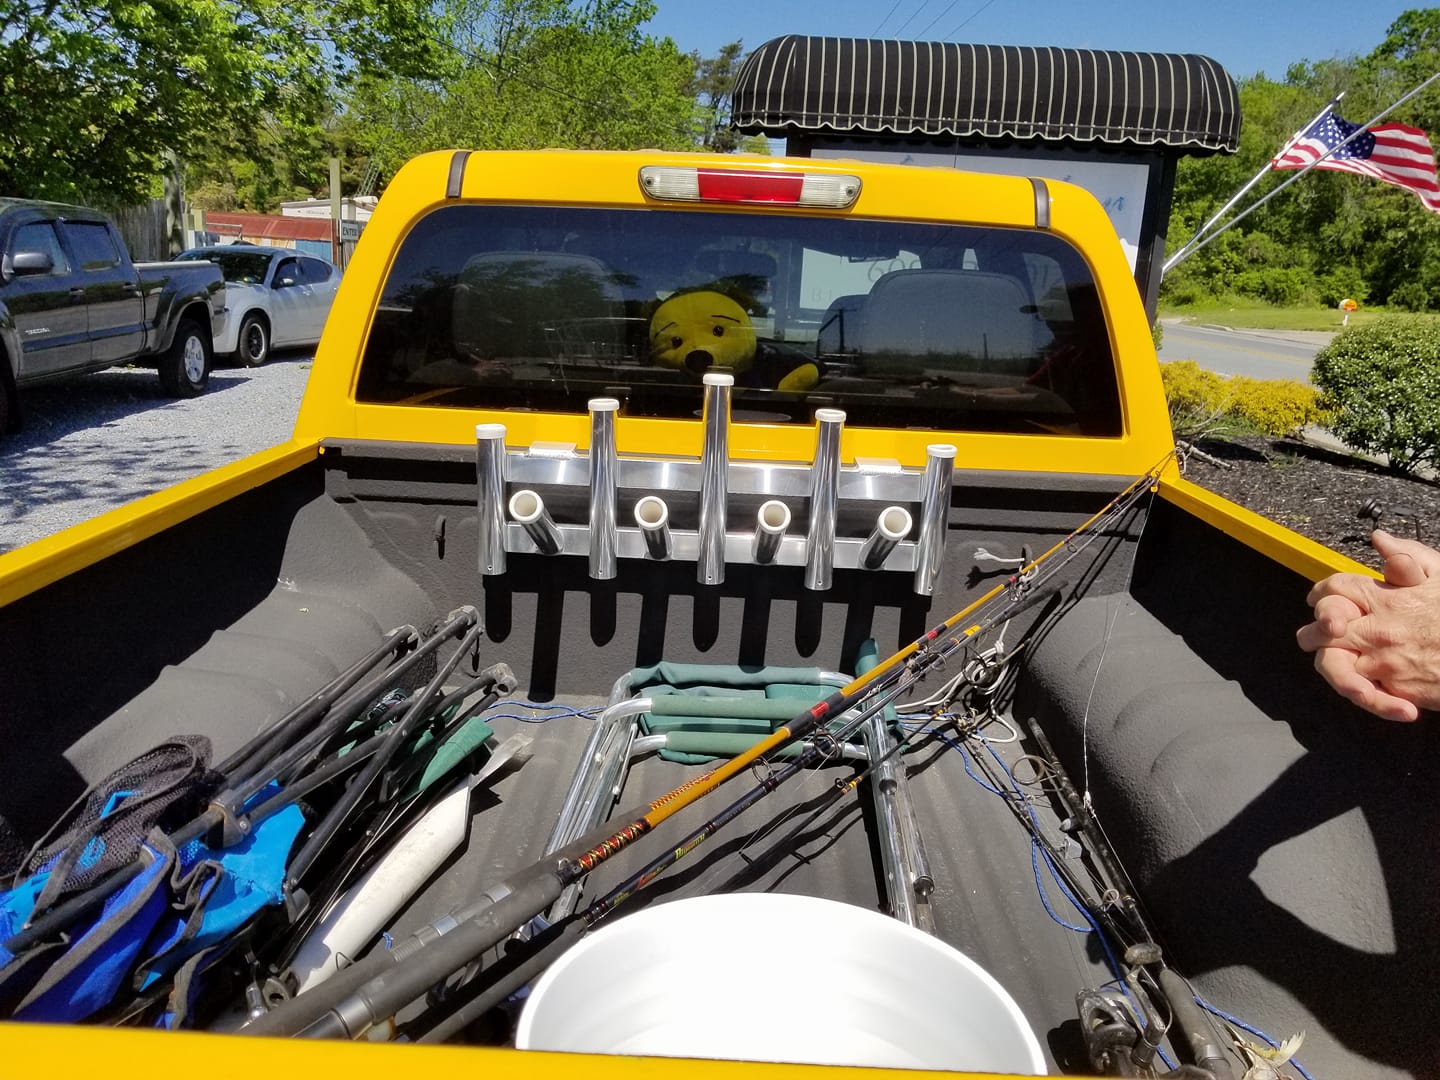 Custom Aluminum Truck Rod Holder Rack for fishing